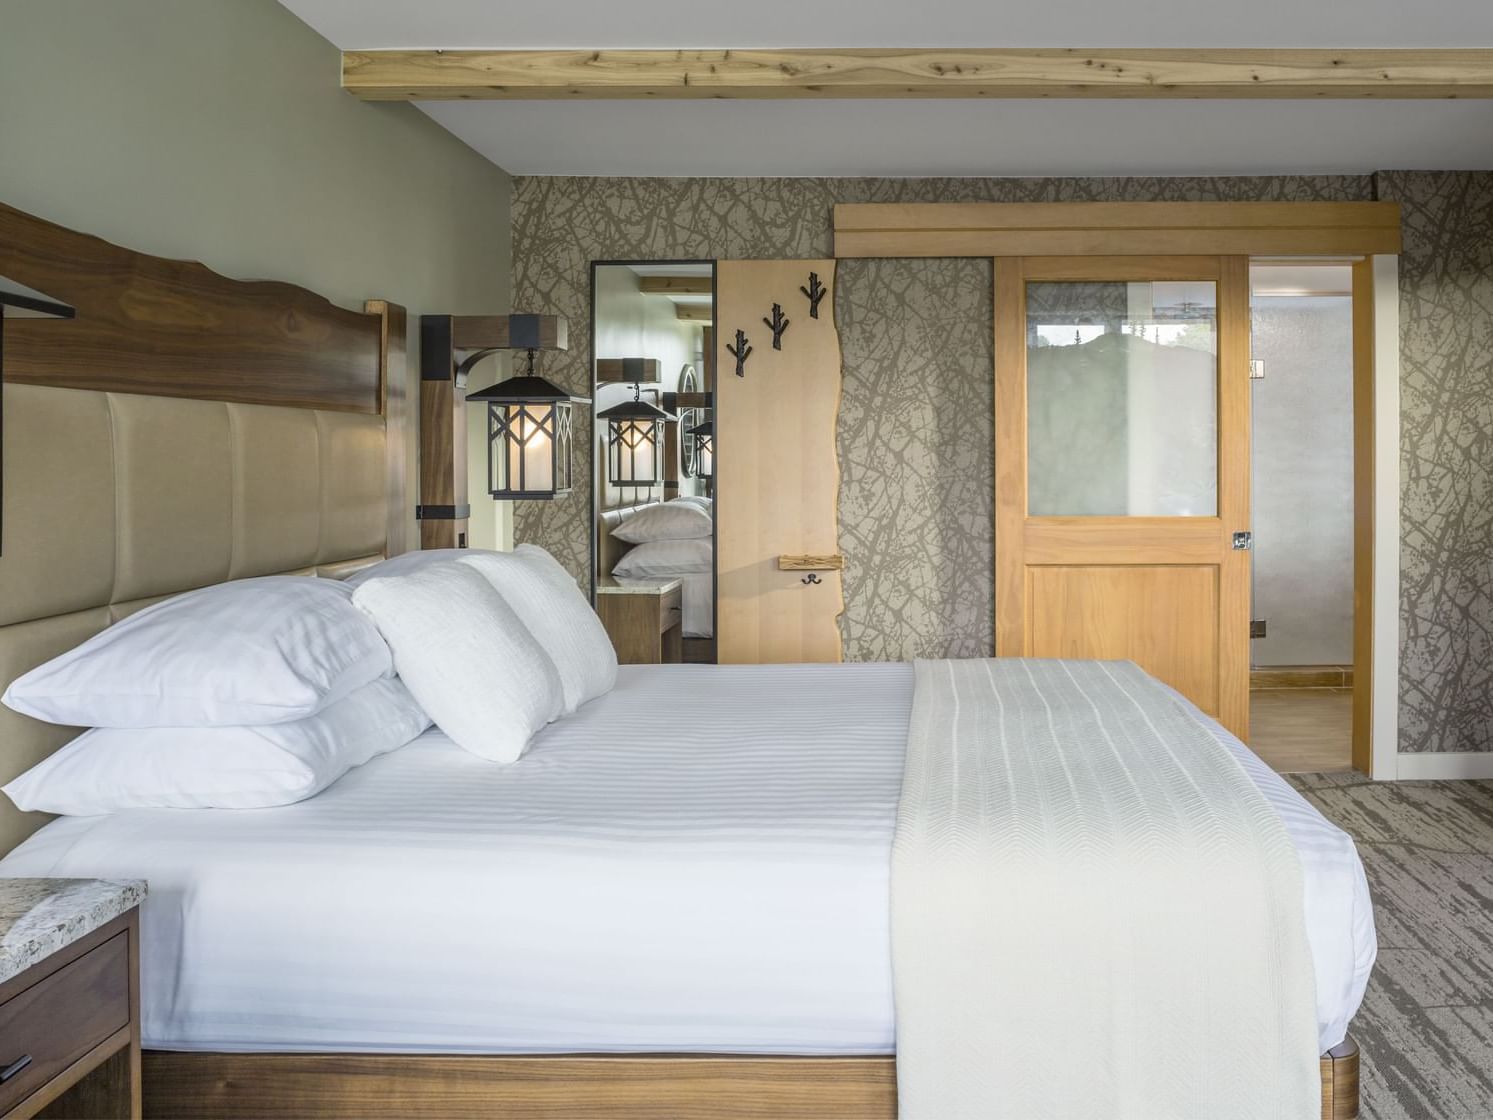 King bed in the Resort Suite Bedroom at High Peaks Resort